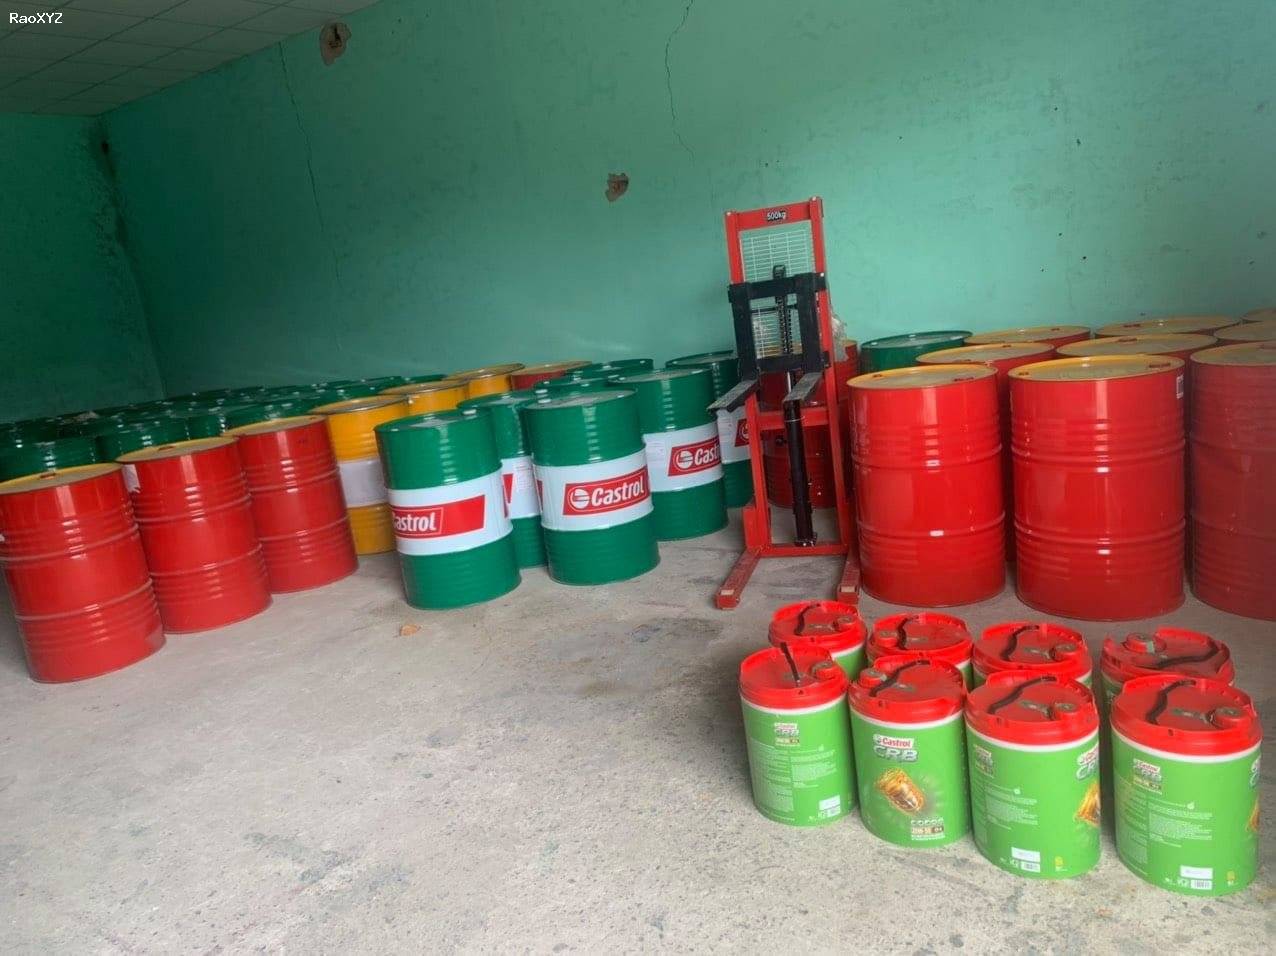 Đại lý mua bán dầu nhớt Castrol Bp chính hãng tại TpHCM, Long An, Bình Dương, Đồng Nai – 0942.71.70.76